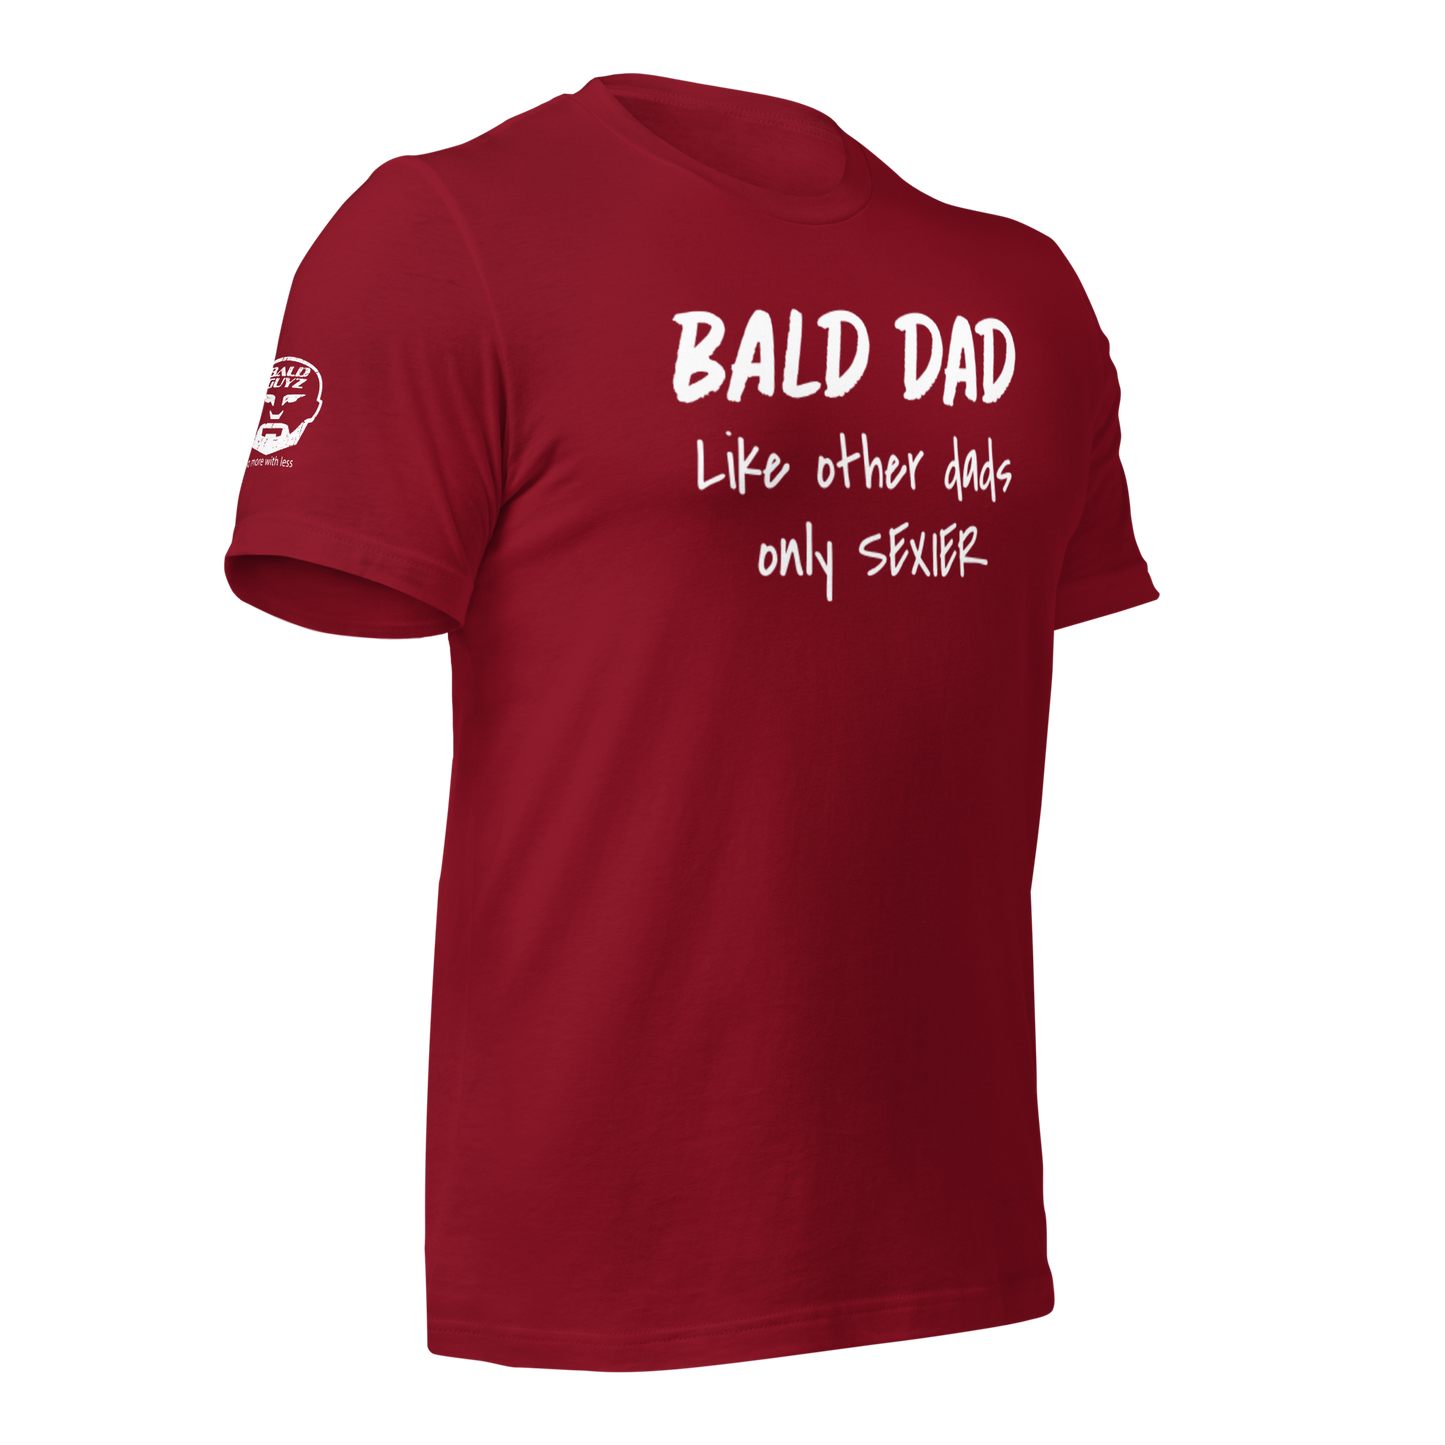 Bald Dad Sexier t-shirt